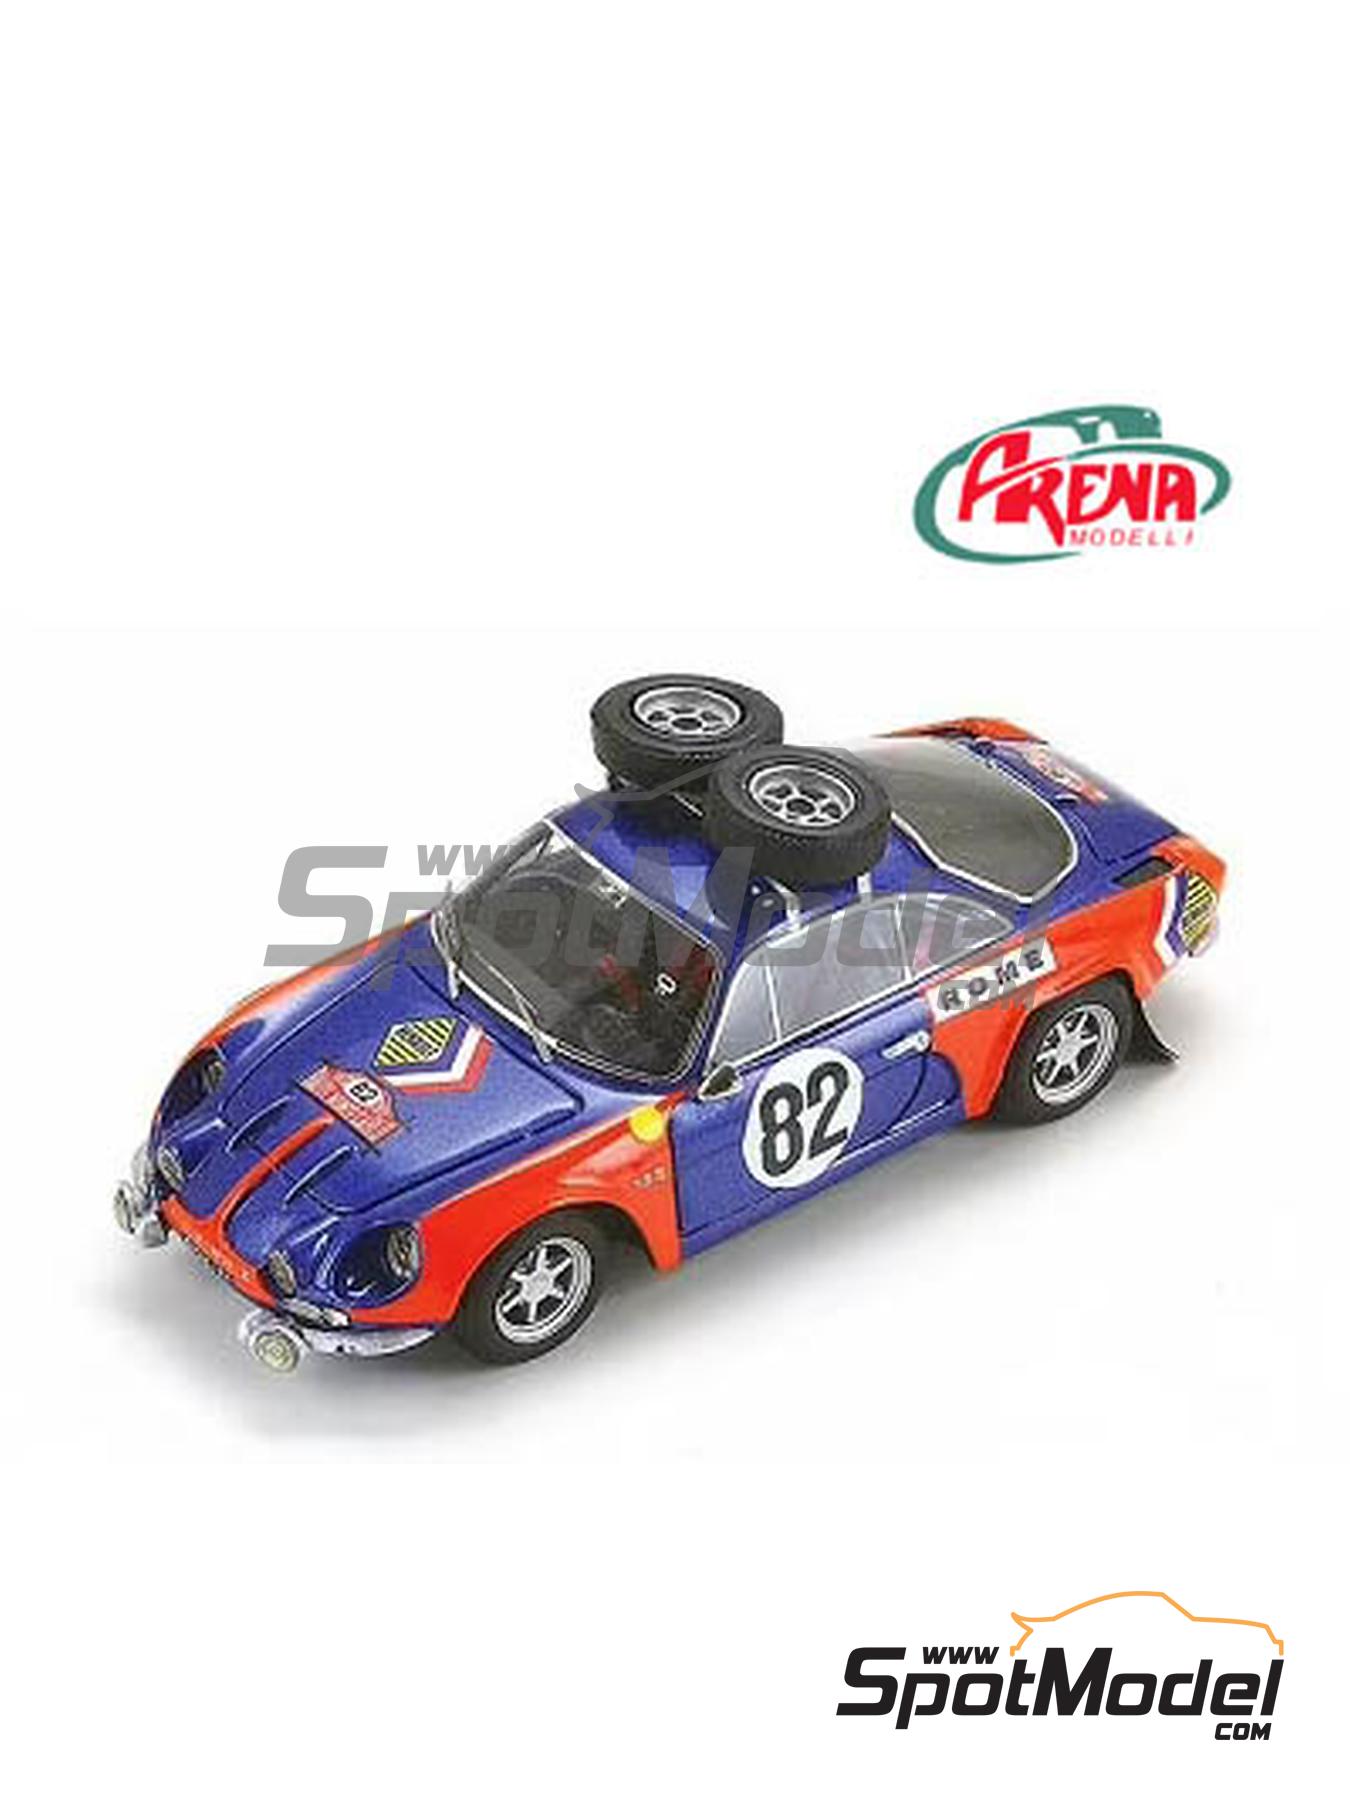 Arena Modelli ARE699: Car scale model kit 1/43 scale - Alpine